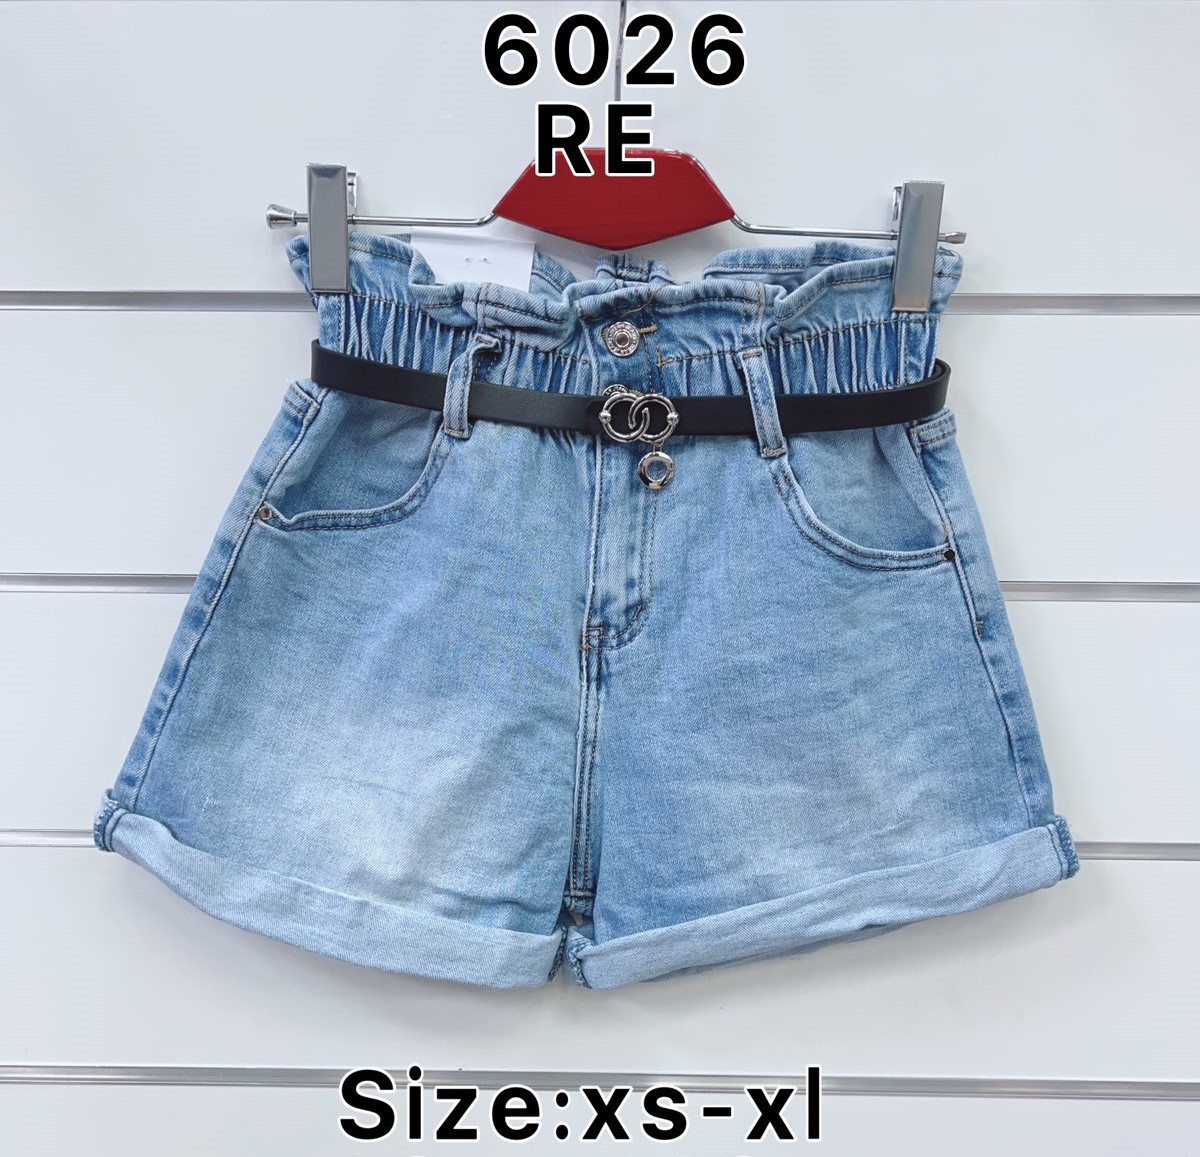 Szorty  damskie jeans Roz XS-XL  1 kolor . Paczka 12sz.t